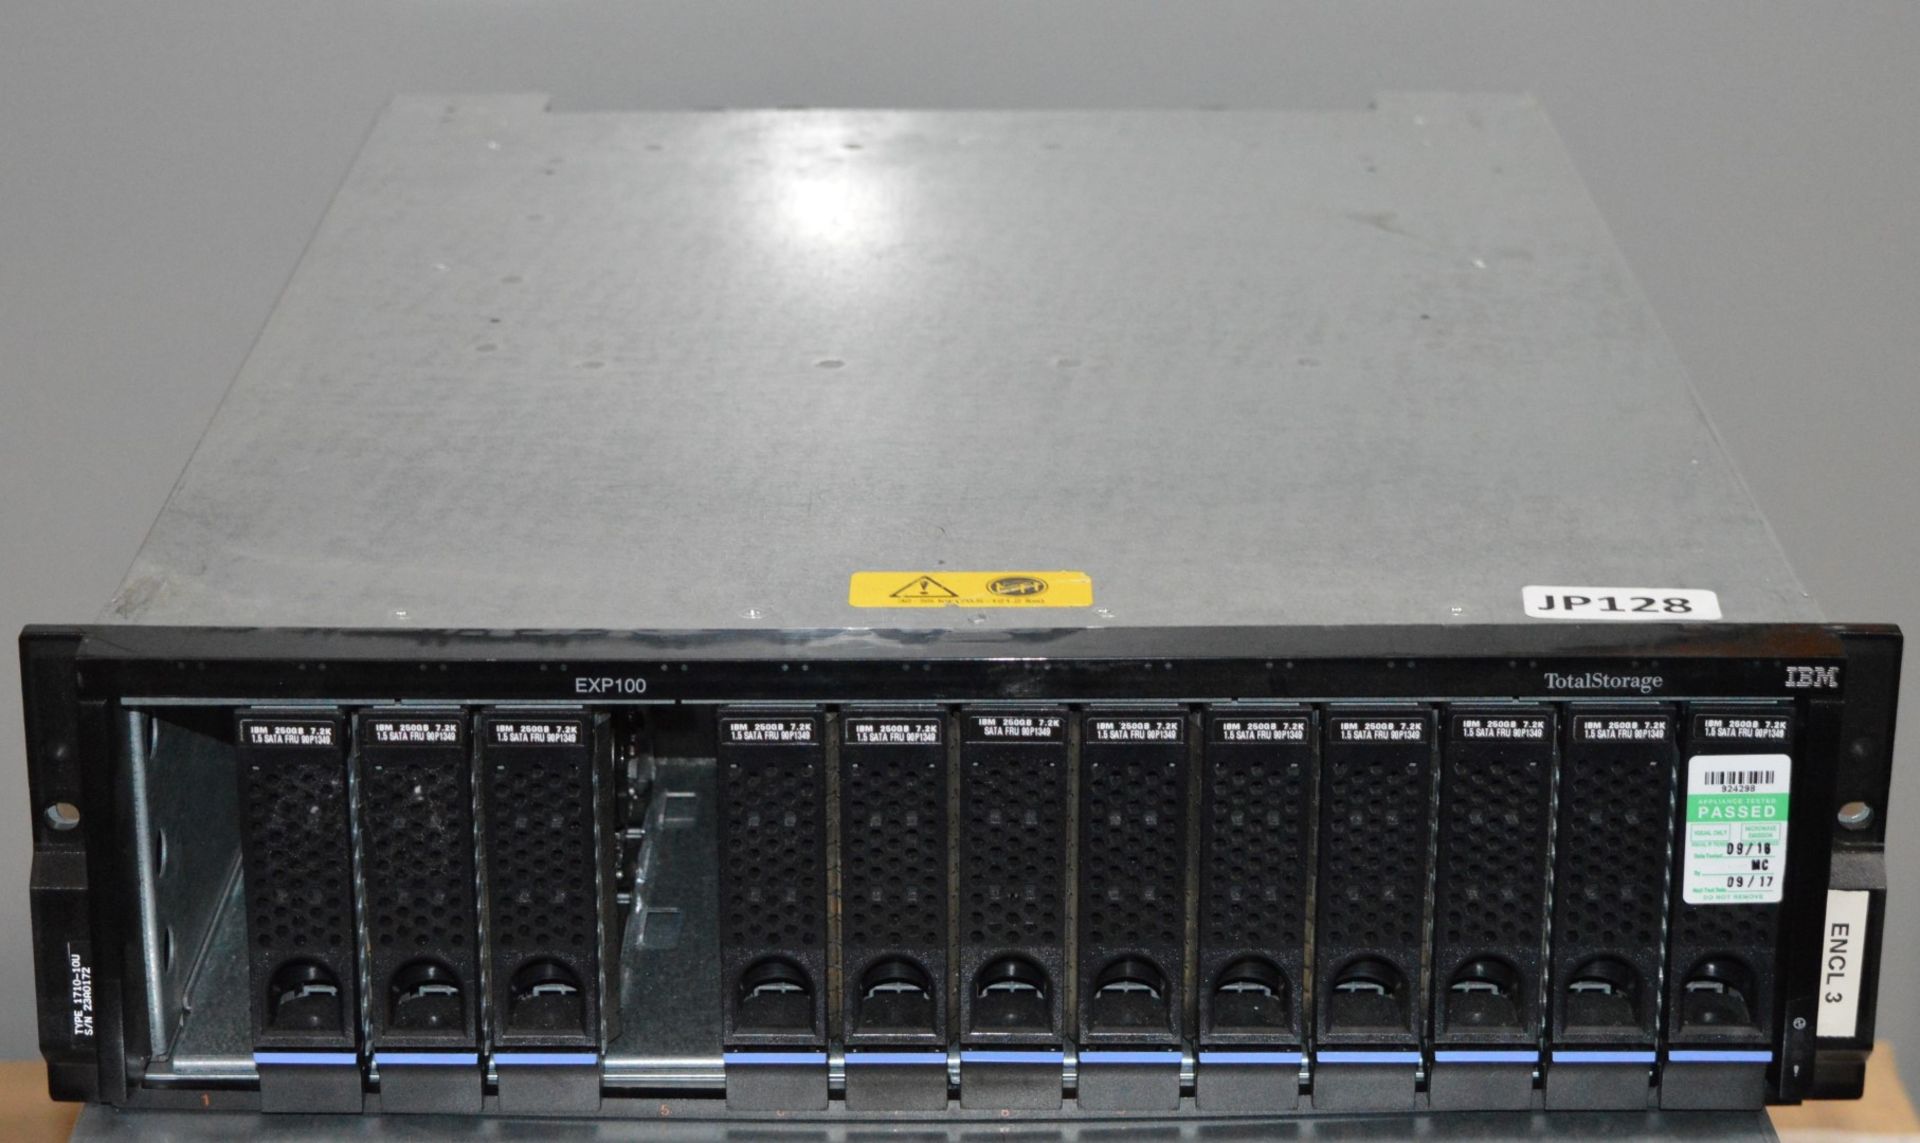 1 x IBM Total Storage EXP100 DS400 Hard Drive Expansion Bay - Model 1710 - CL400 - Ref JP128 -